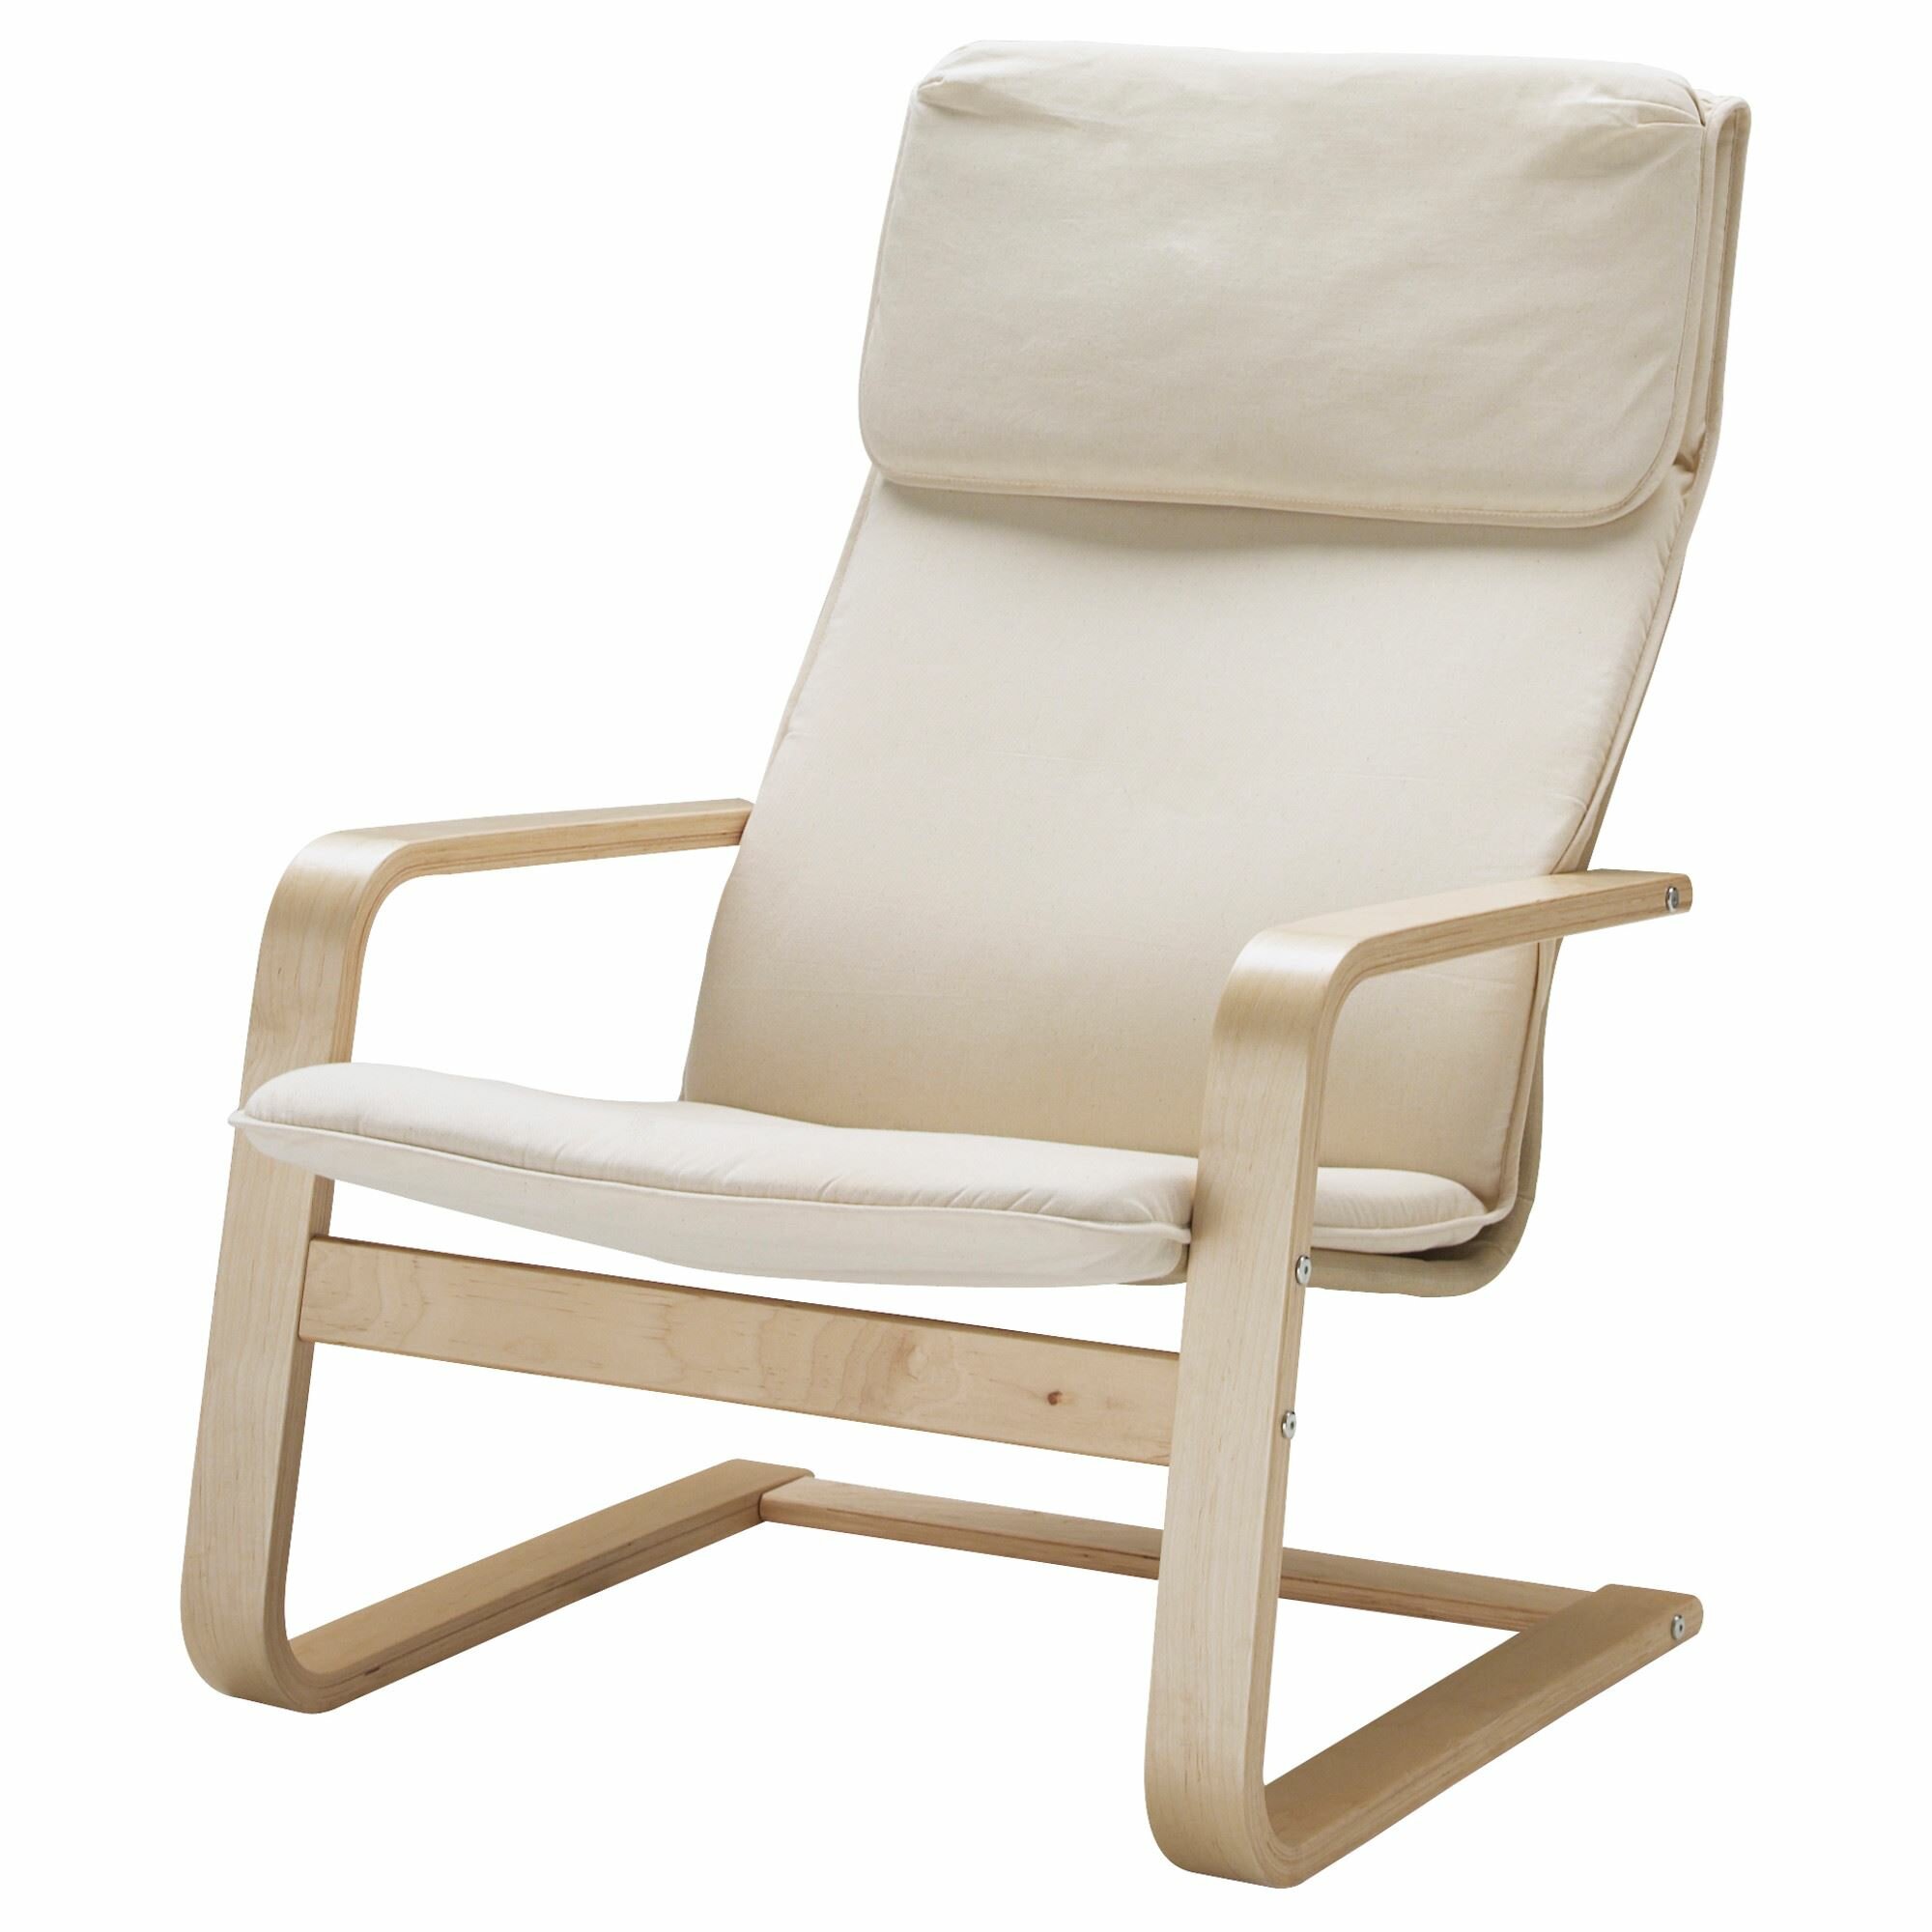 Икея / IKEA PELLO, пелло, кресло-качалка, Холмби натуральный